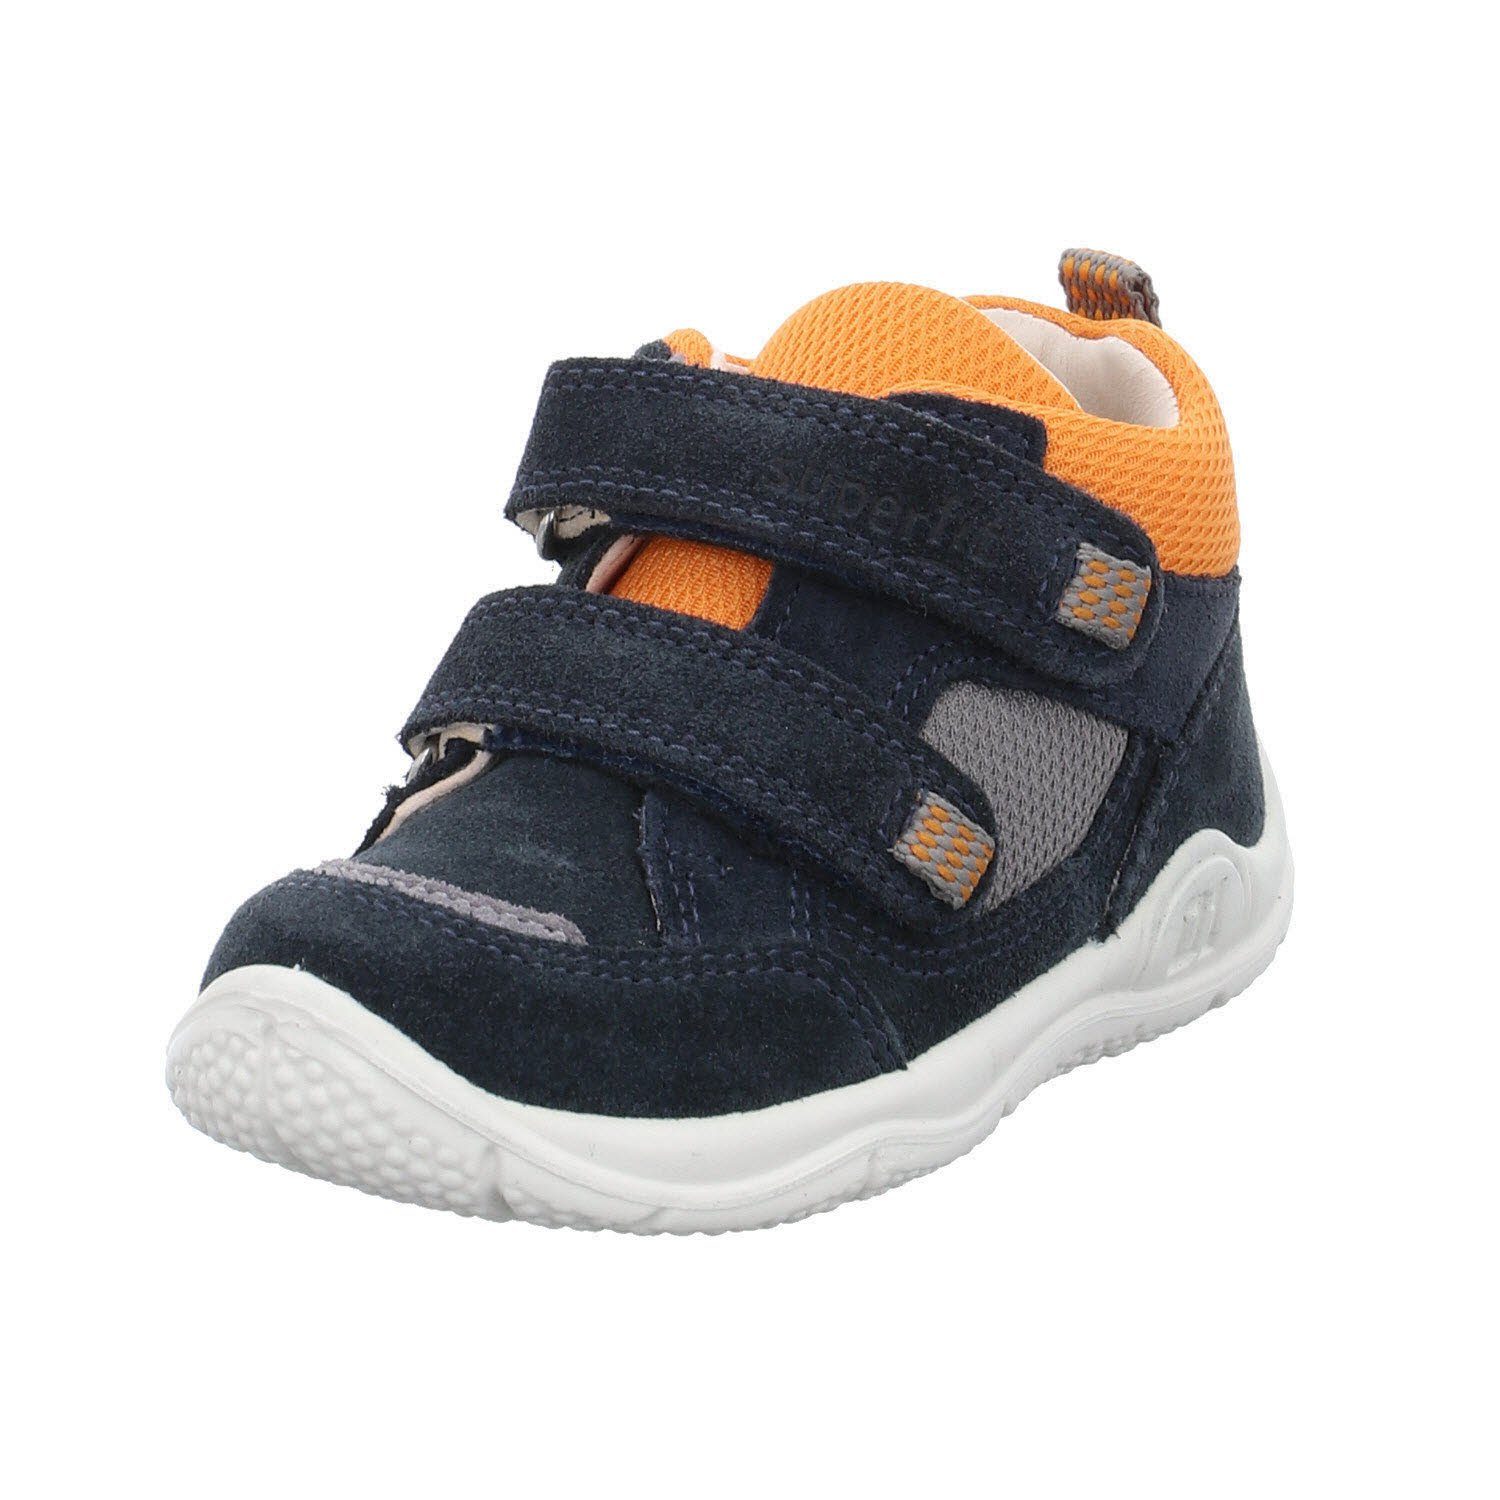 Superfit »Schuhe Kinderschuhe Klettschuhe« Klettschuh online kaufen | OTTO